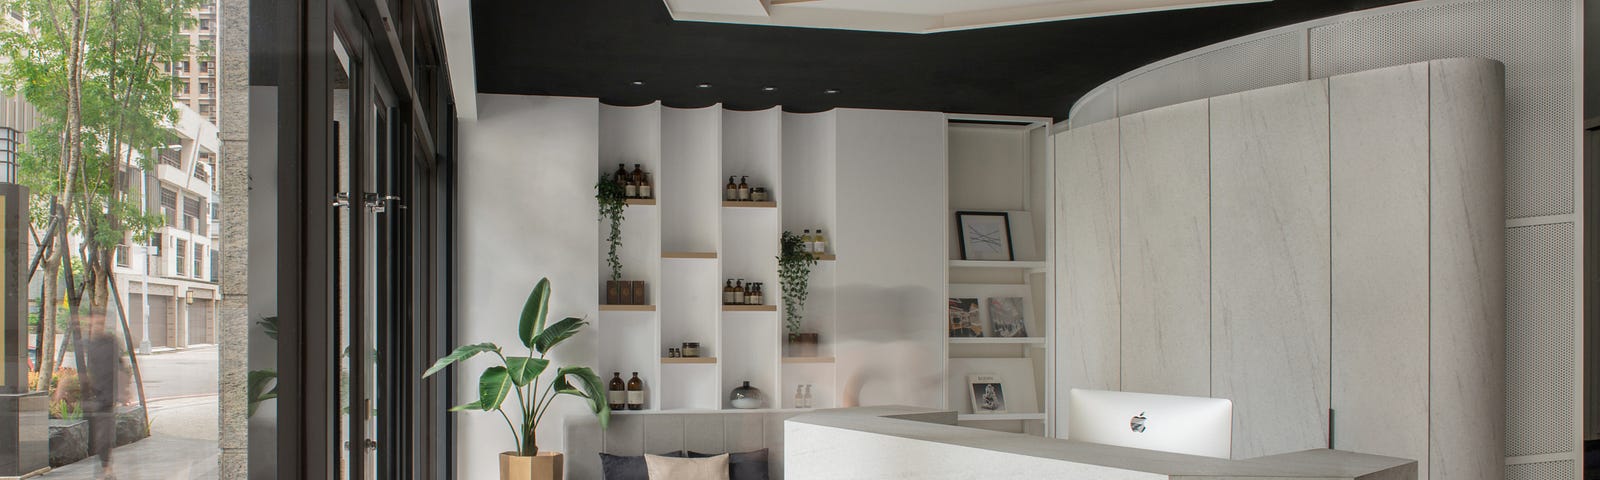 漢玥室內設計 < 慕白 > 髮廊空間：台中 簡約 北歐風 自然 灰色調 黑白色系